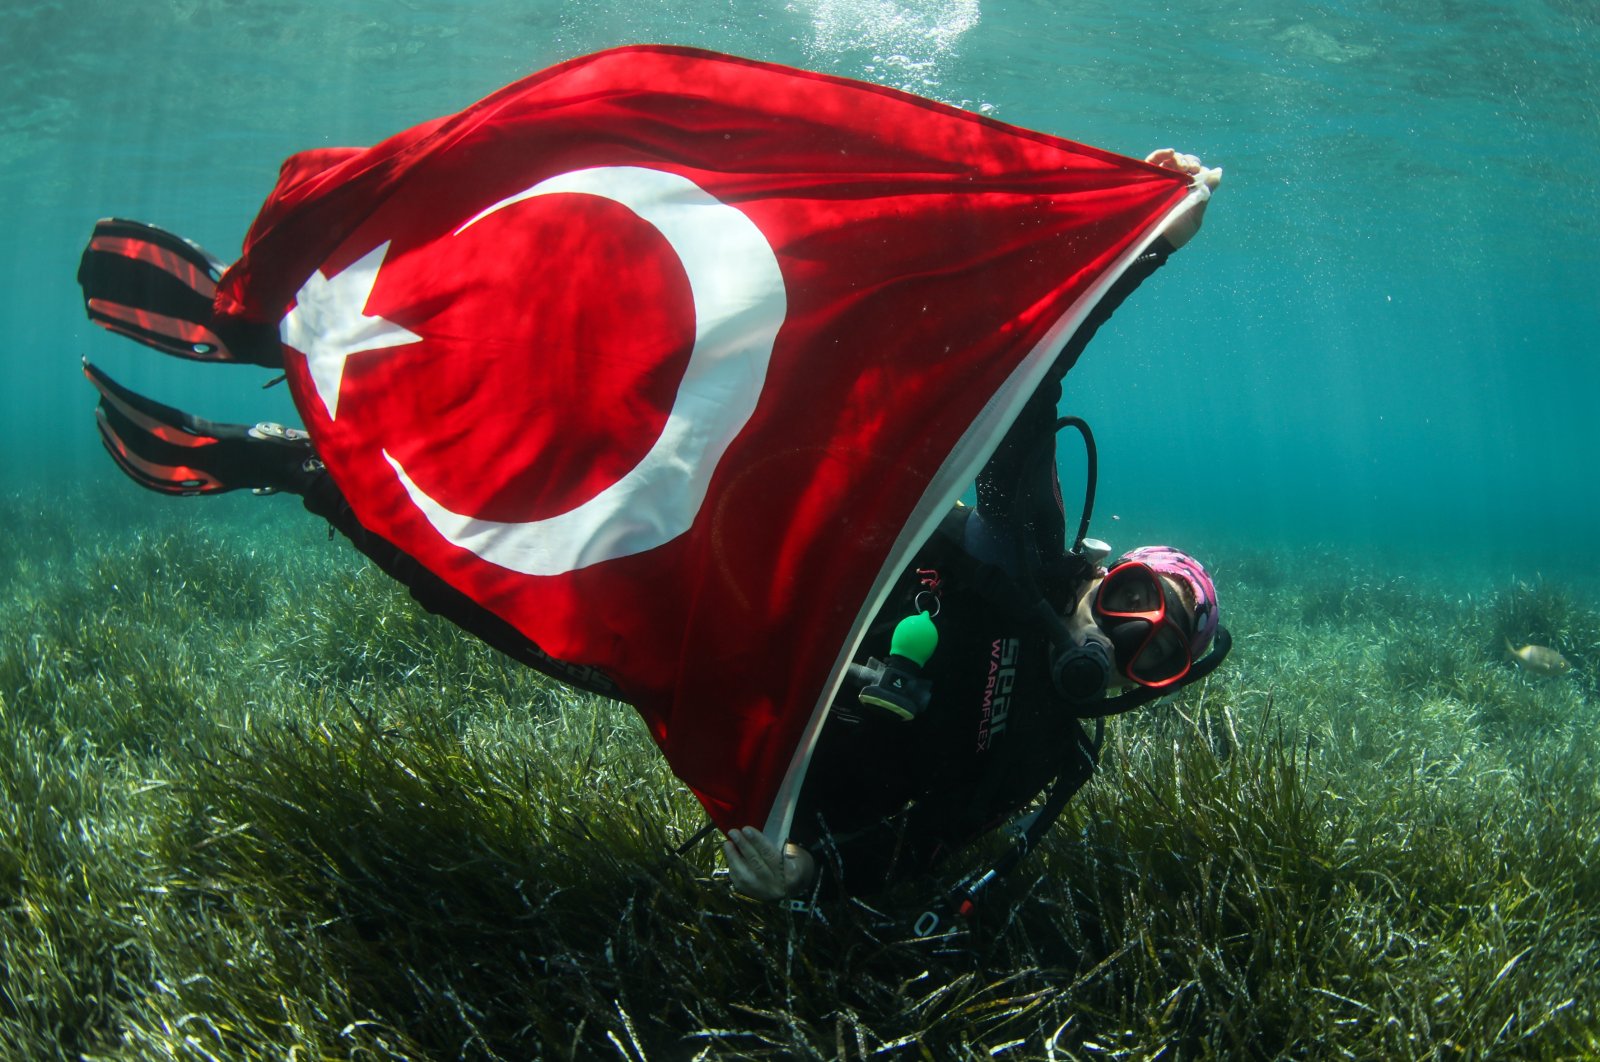 Türkiye’s rich underwater treasures gain int’l recognition